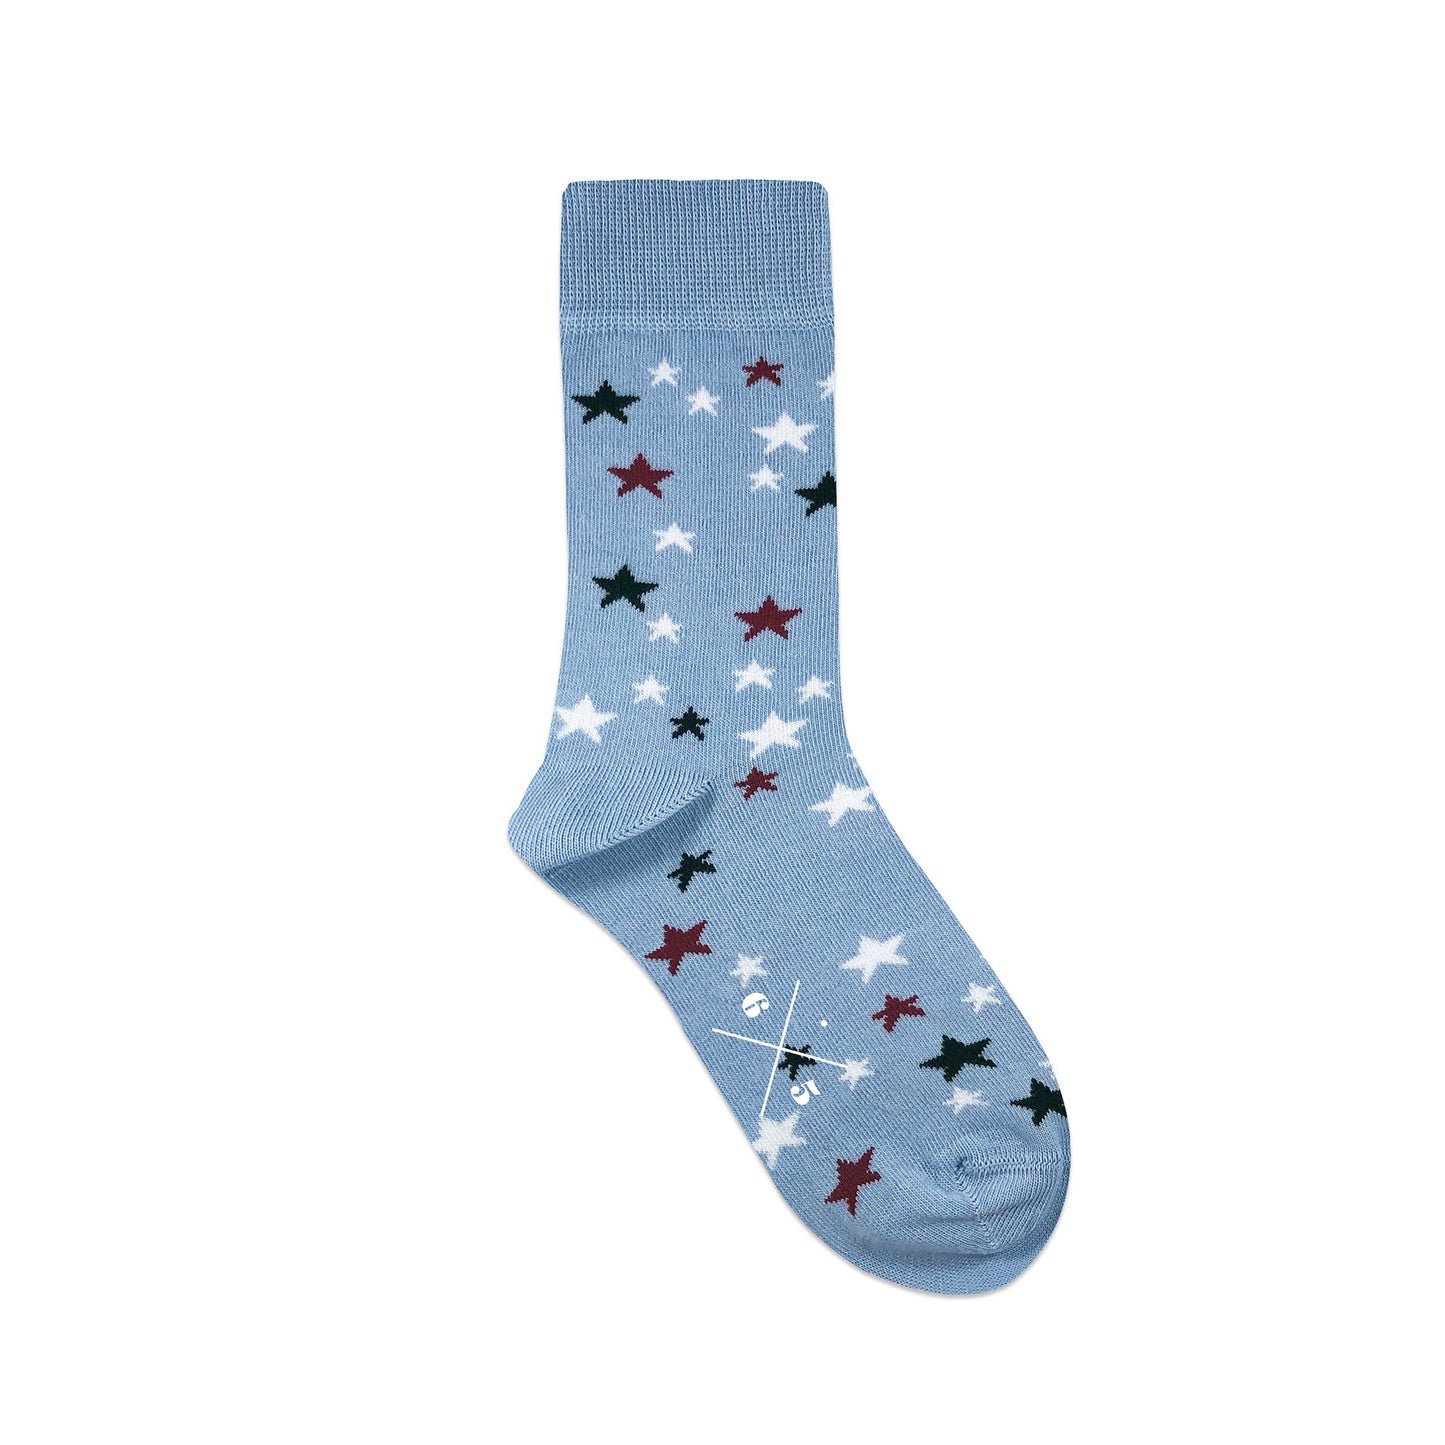 STARS BLUE Mavi Kırmızı Koyu Yeşil Beyaz Yıldızlı Desenli Unisex Çorap - sixtimesfive